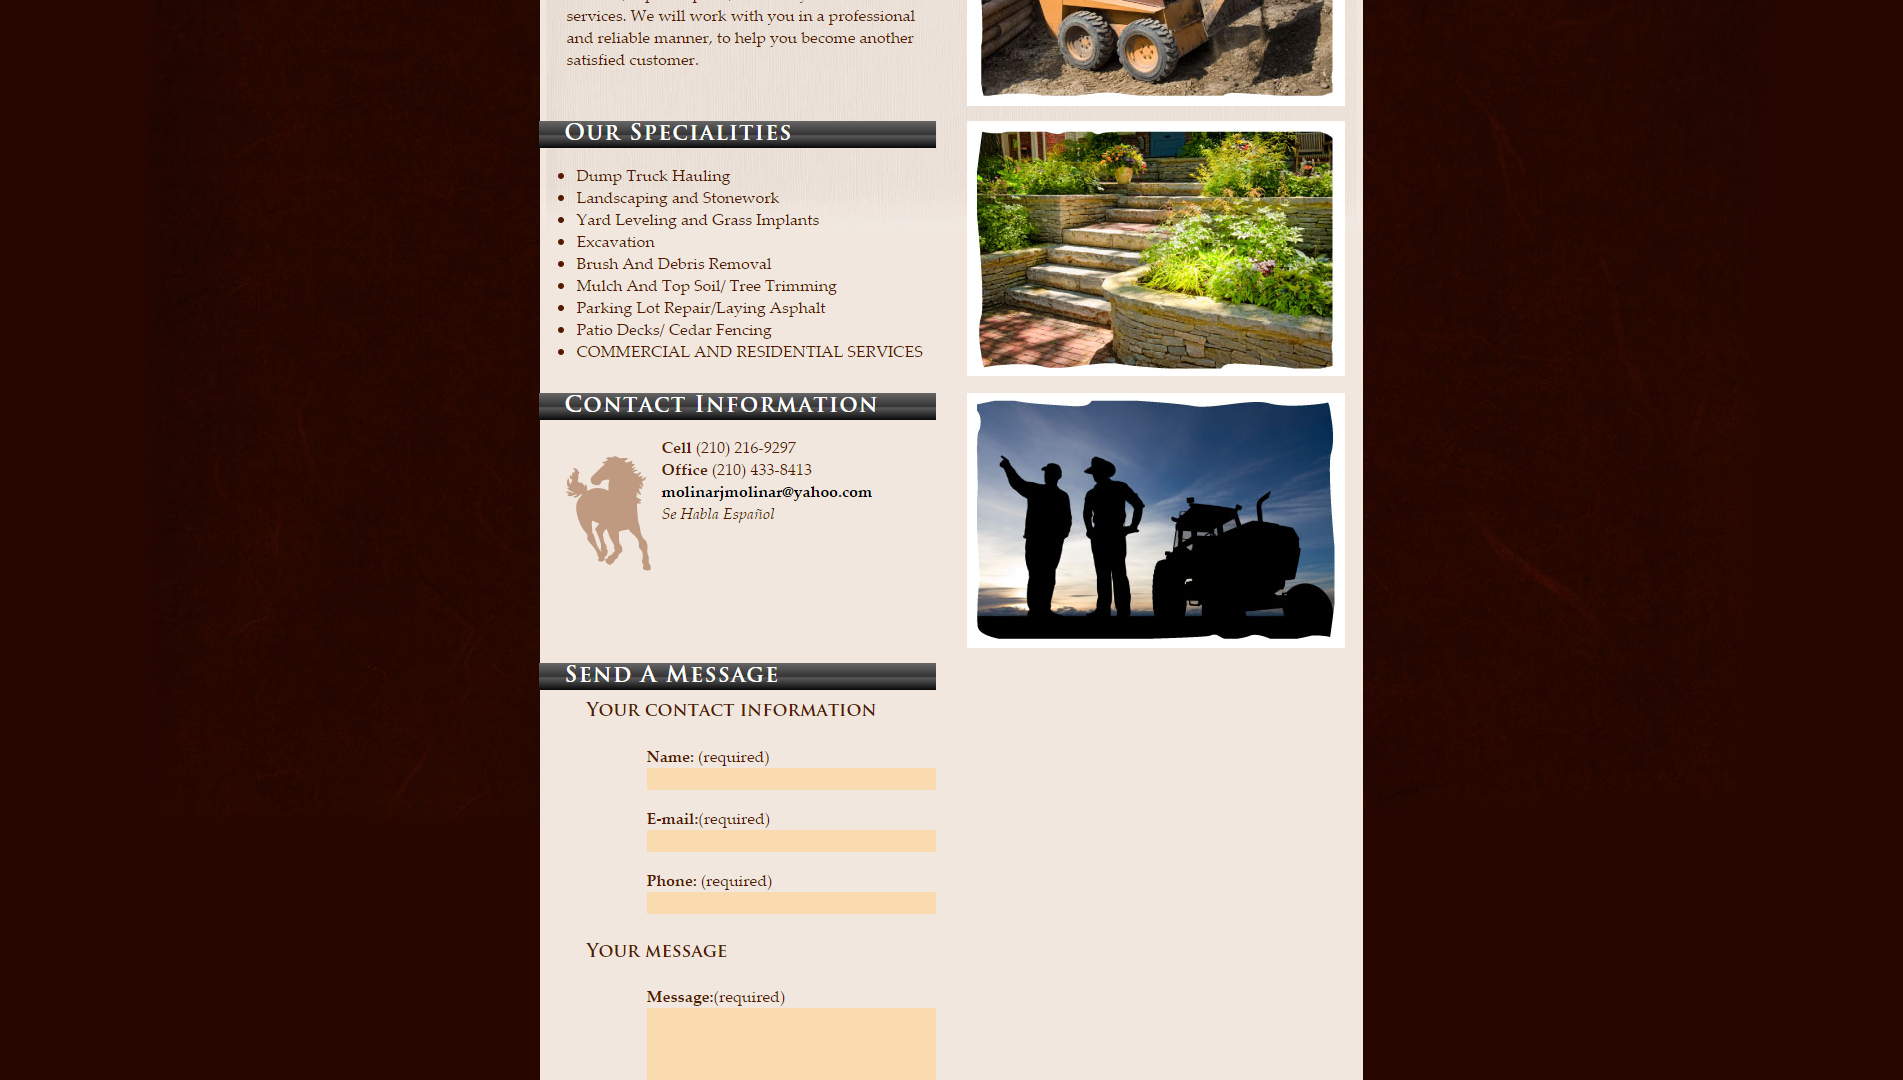 San Antonio Bobcat Services Website